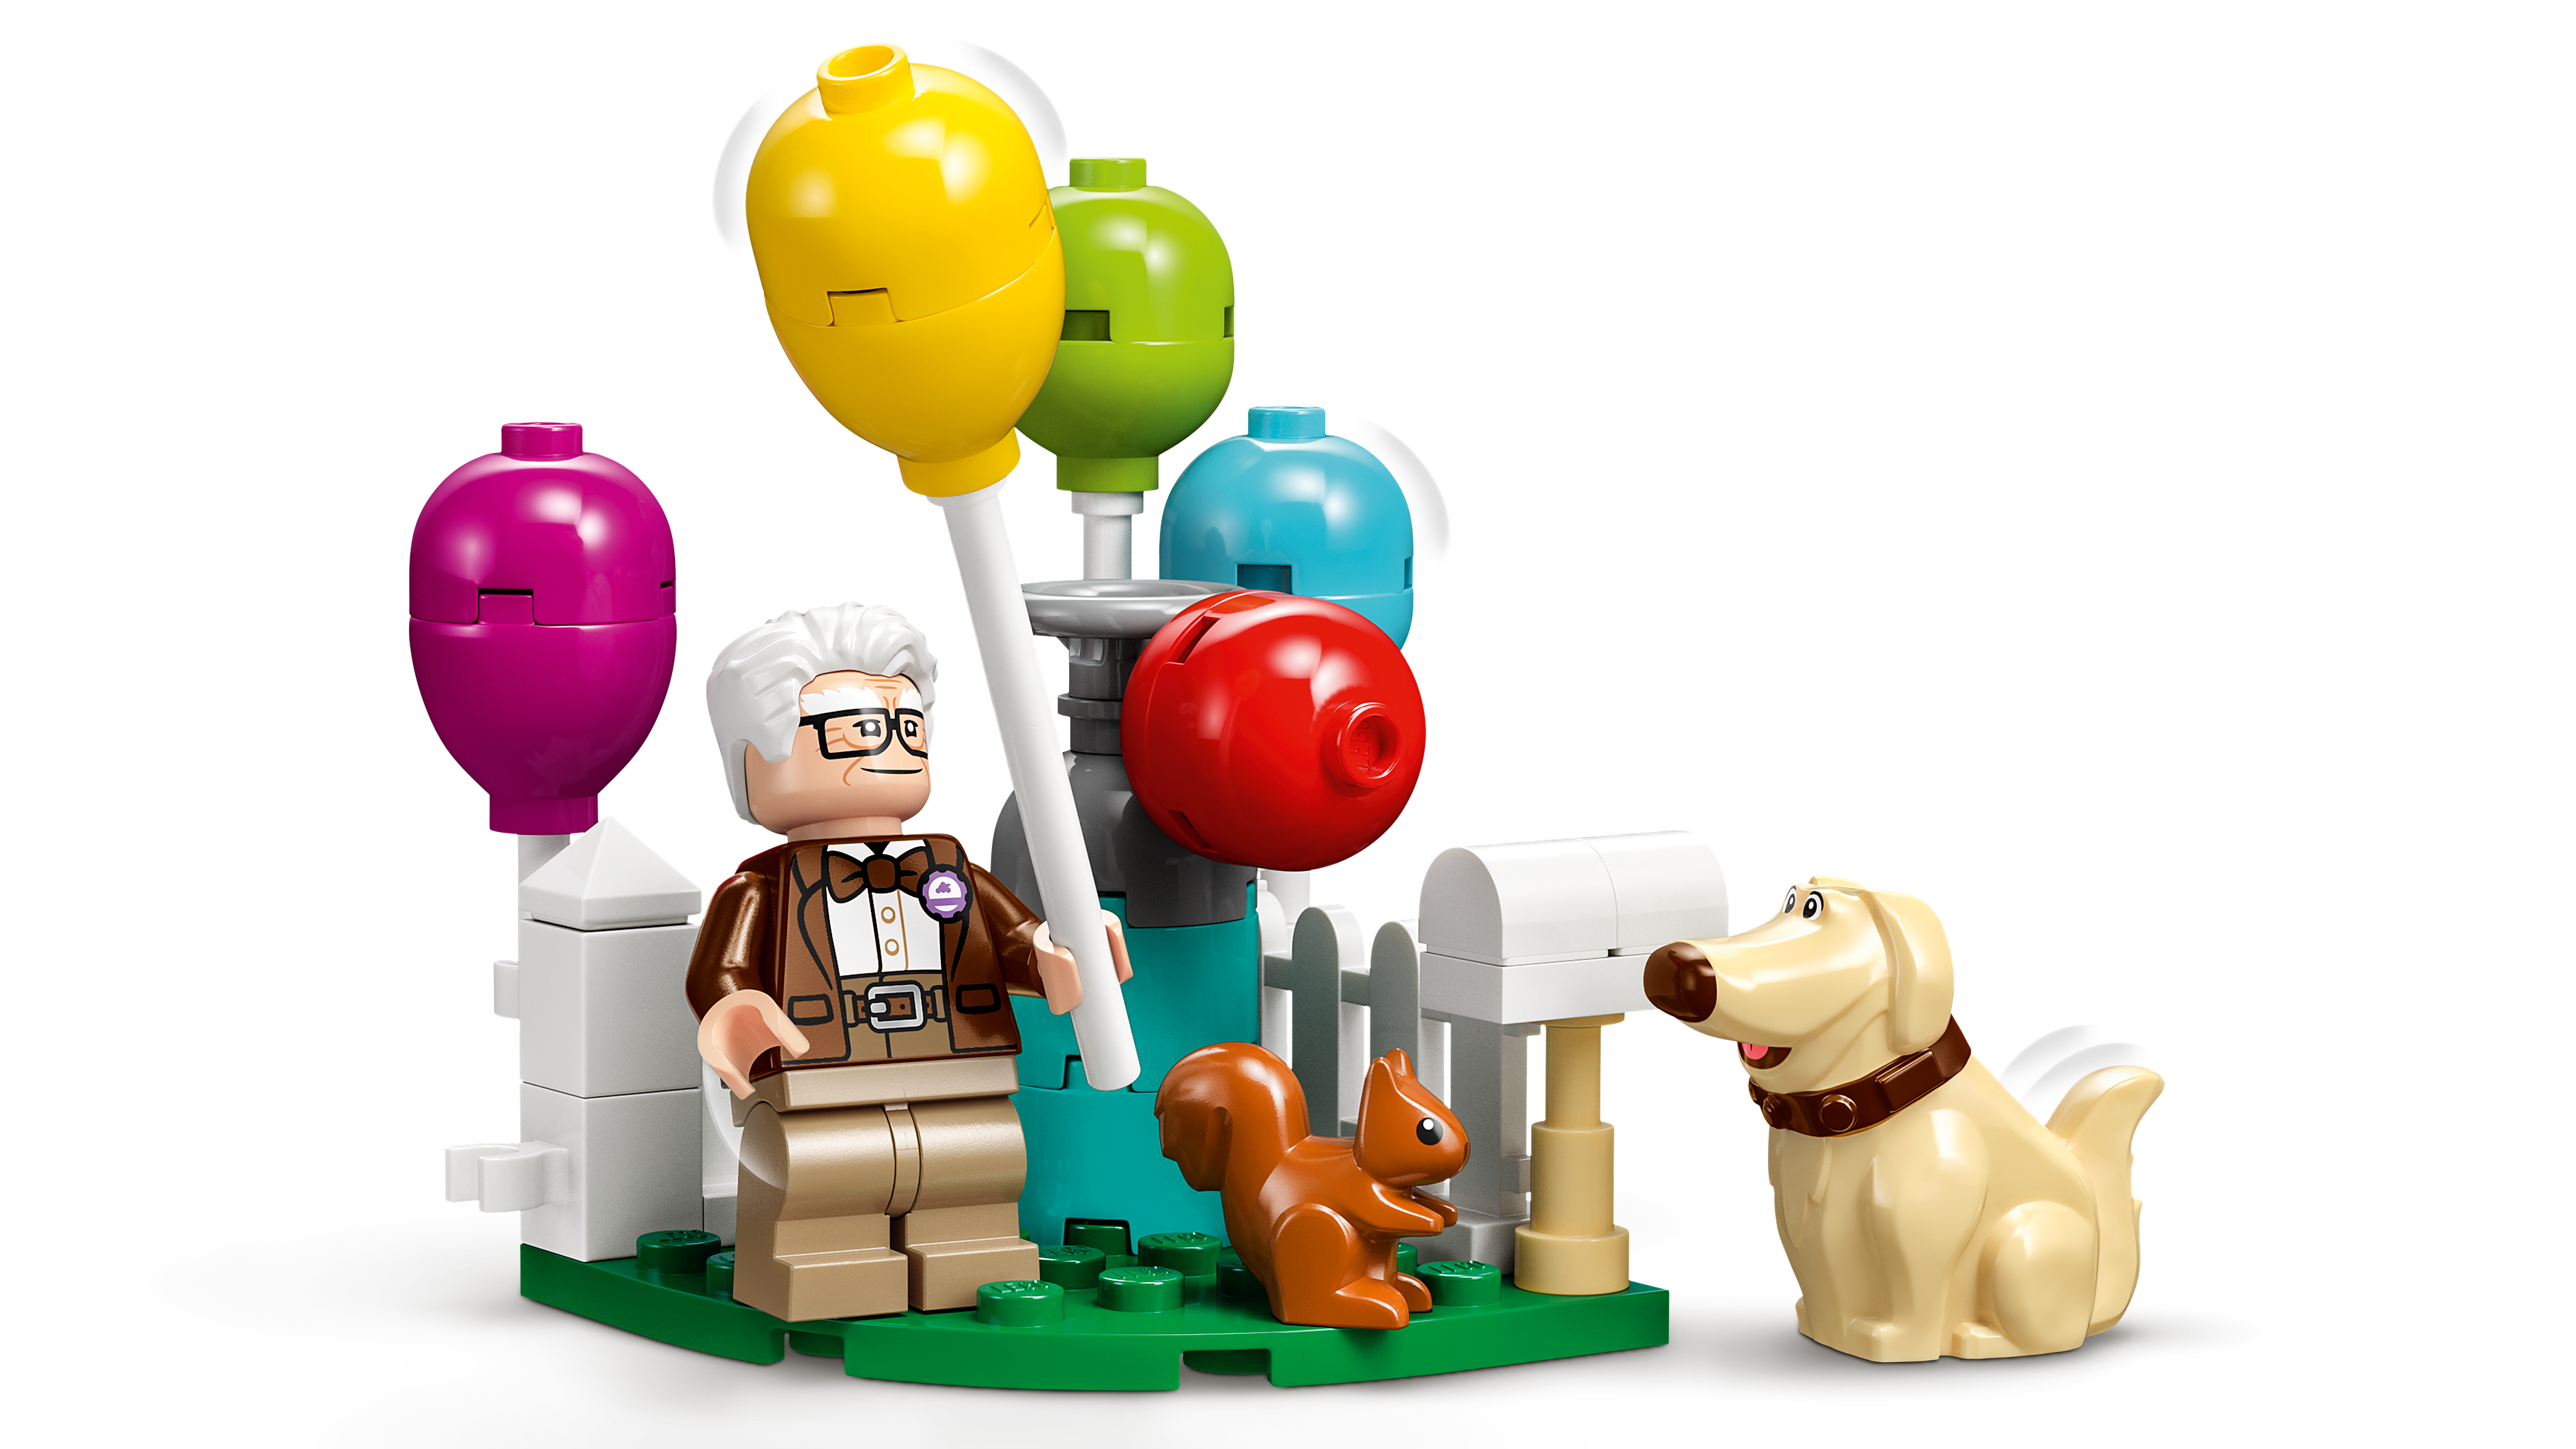 カールじいさんの空飛ぶ家 43217 - レゴ® |ディズニーセット - LEGO